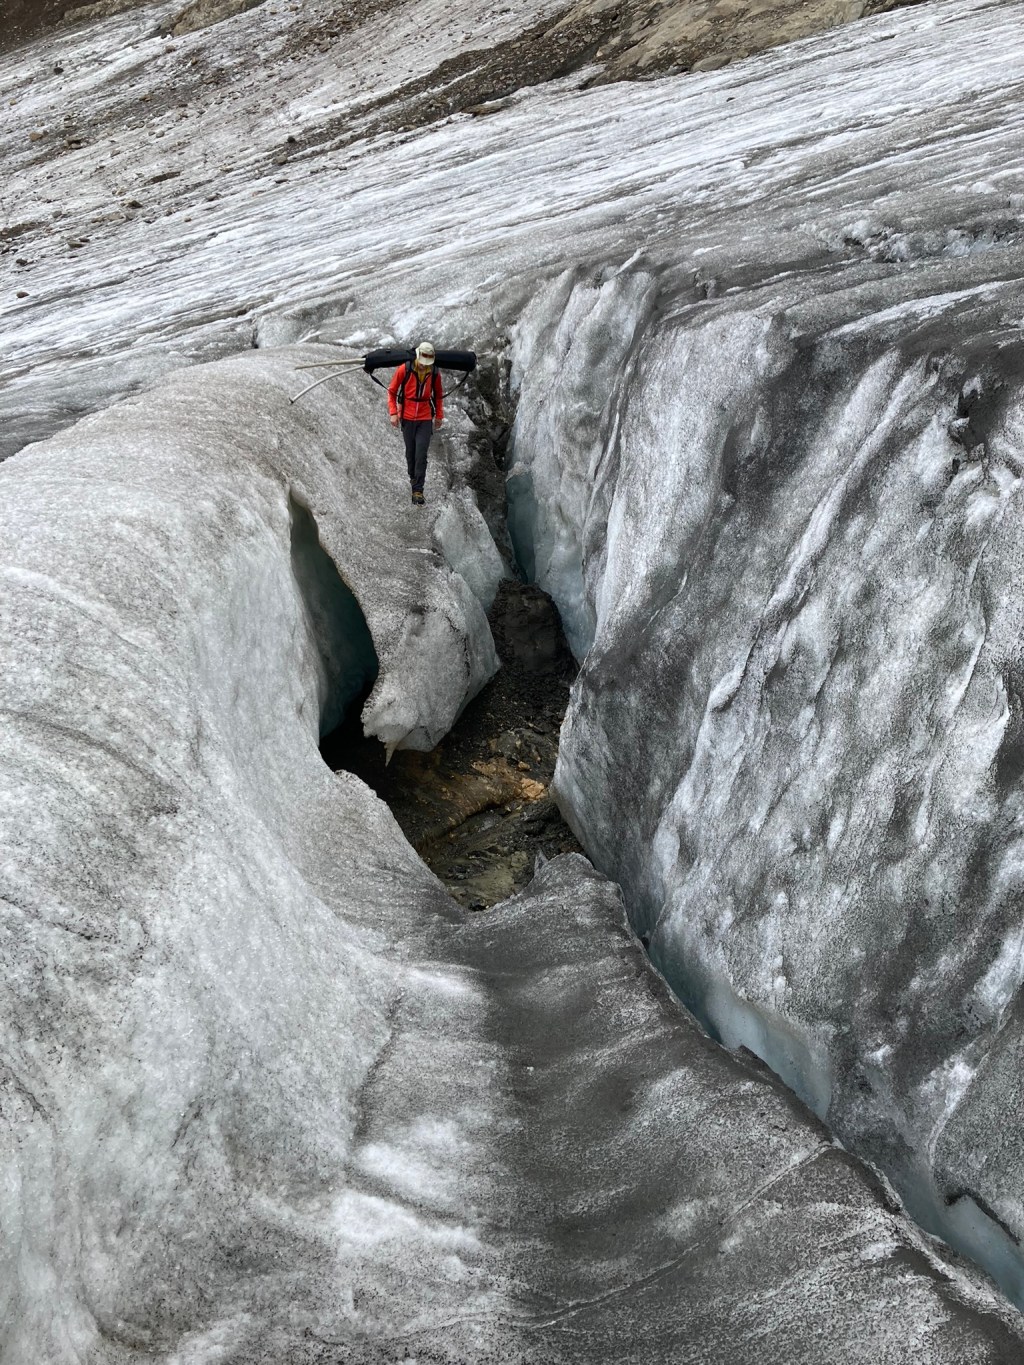 Um glaciologista nas geleiras de Griesgletscher, na Suíça. “Daqui a poucos anos, o gelo desaparecerá aqui, dividindo a geleira em duas partes.” 03/09/2022